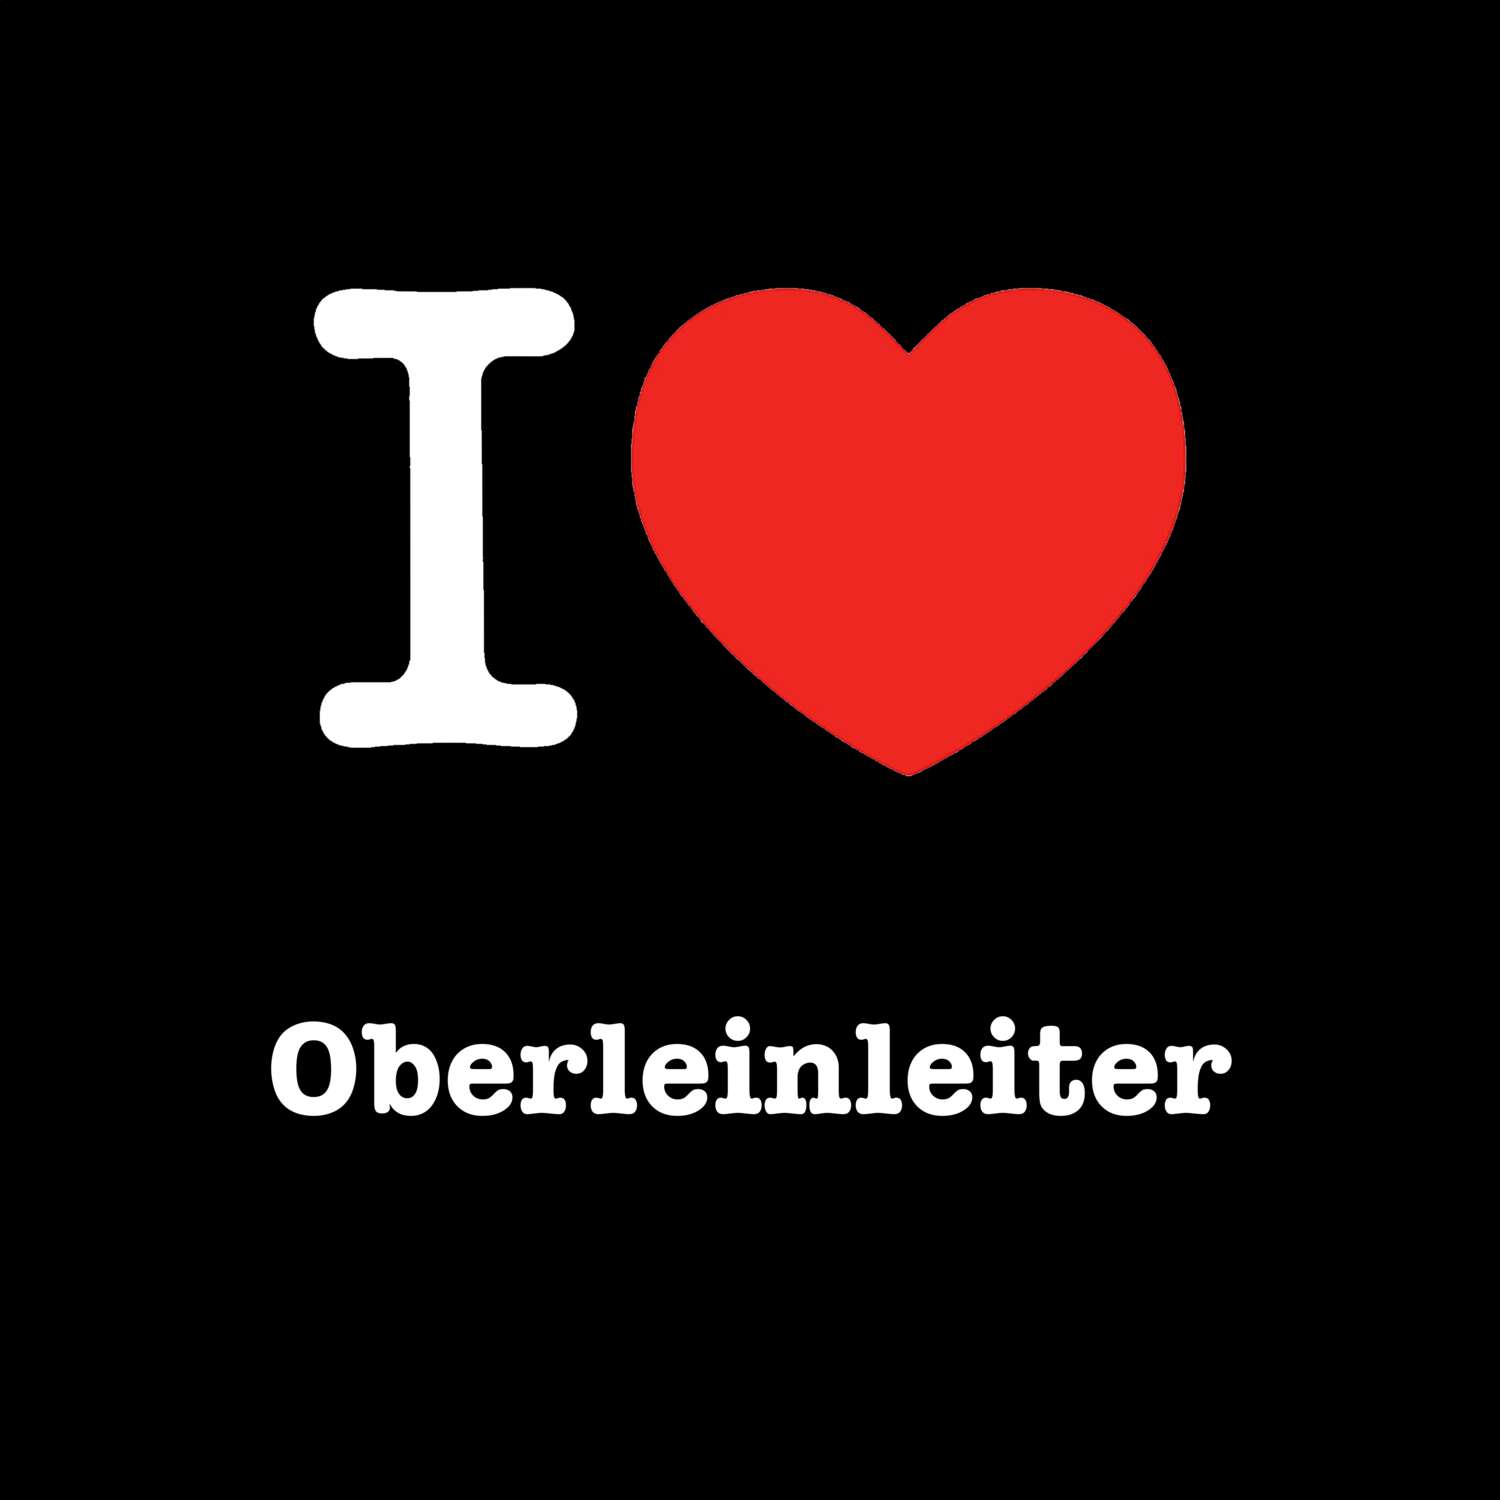 Oberleinleiter T-Shirt »I love«